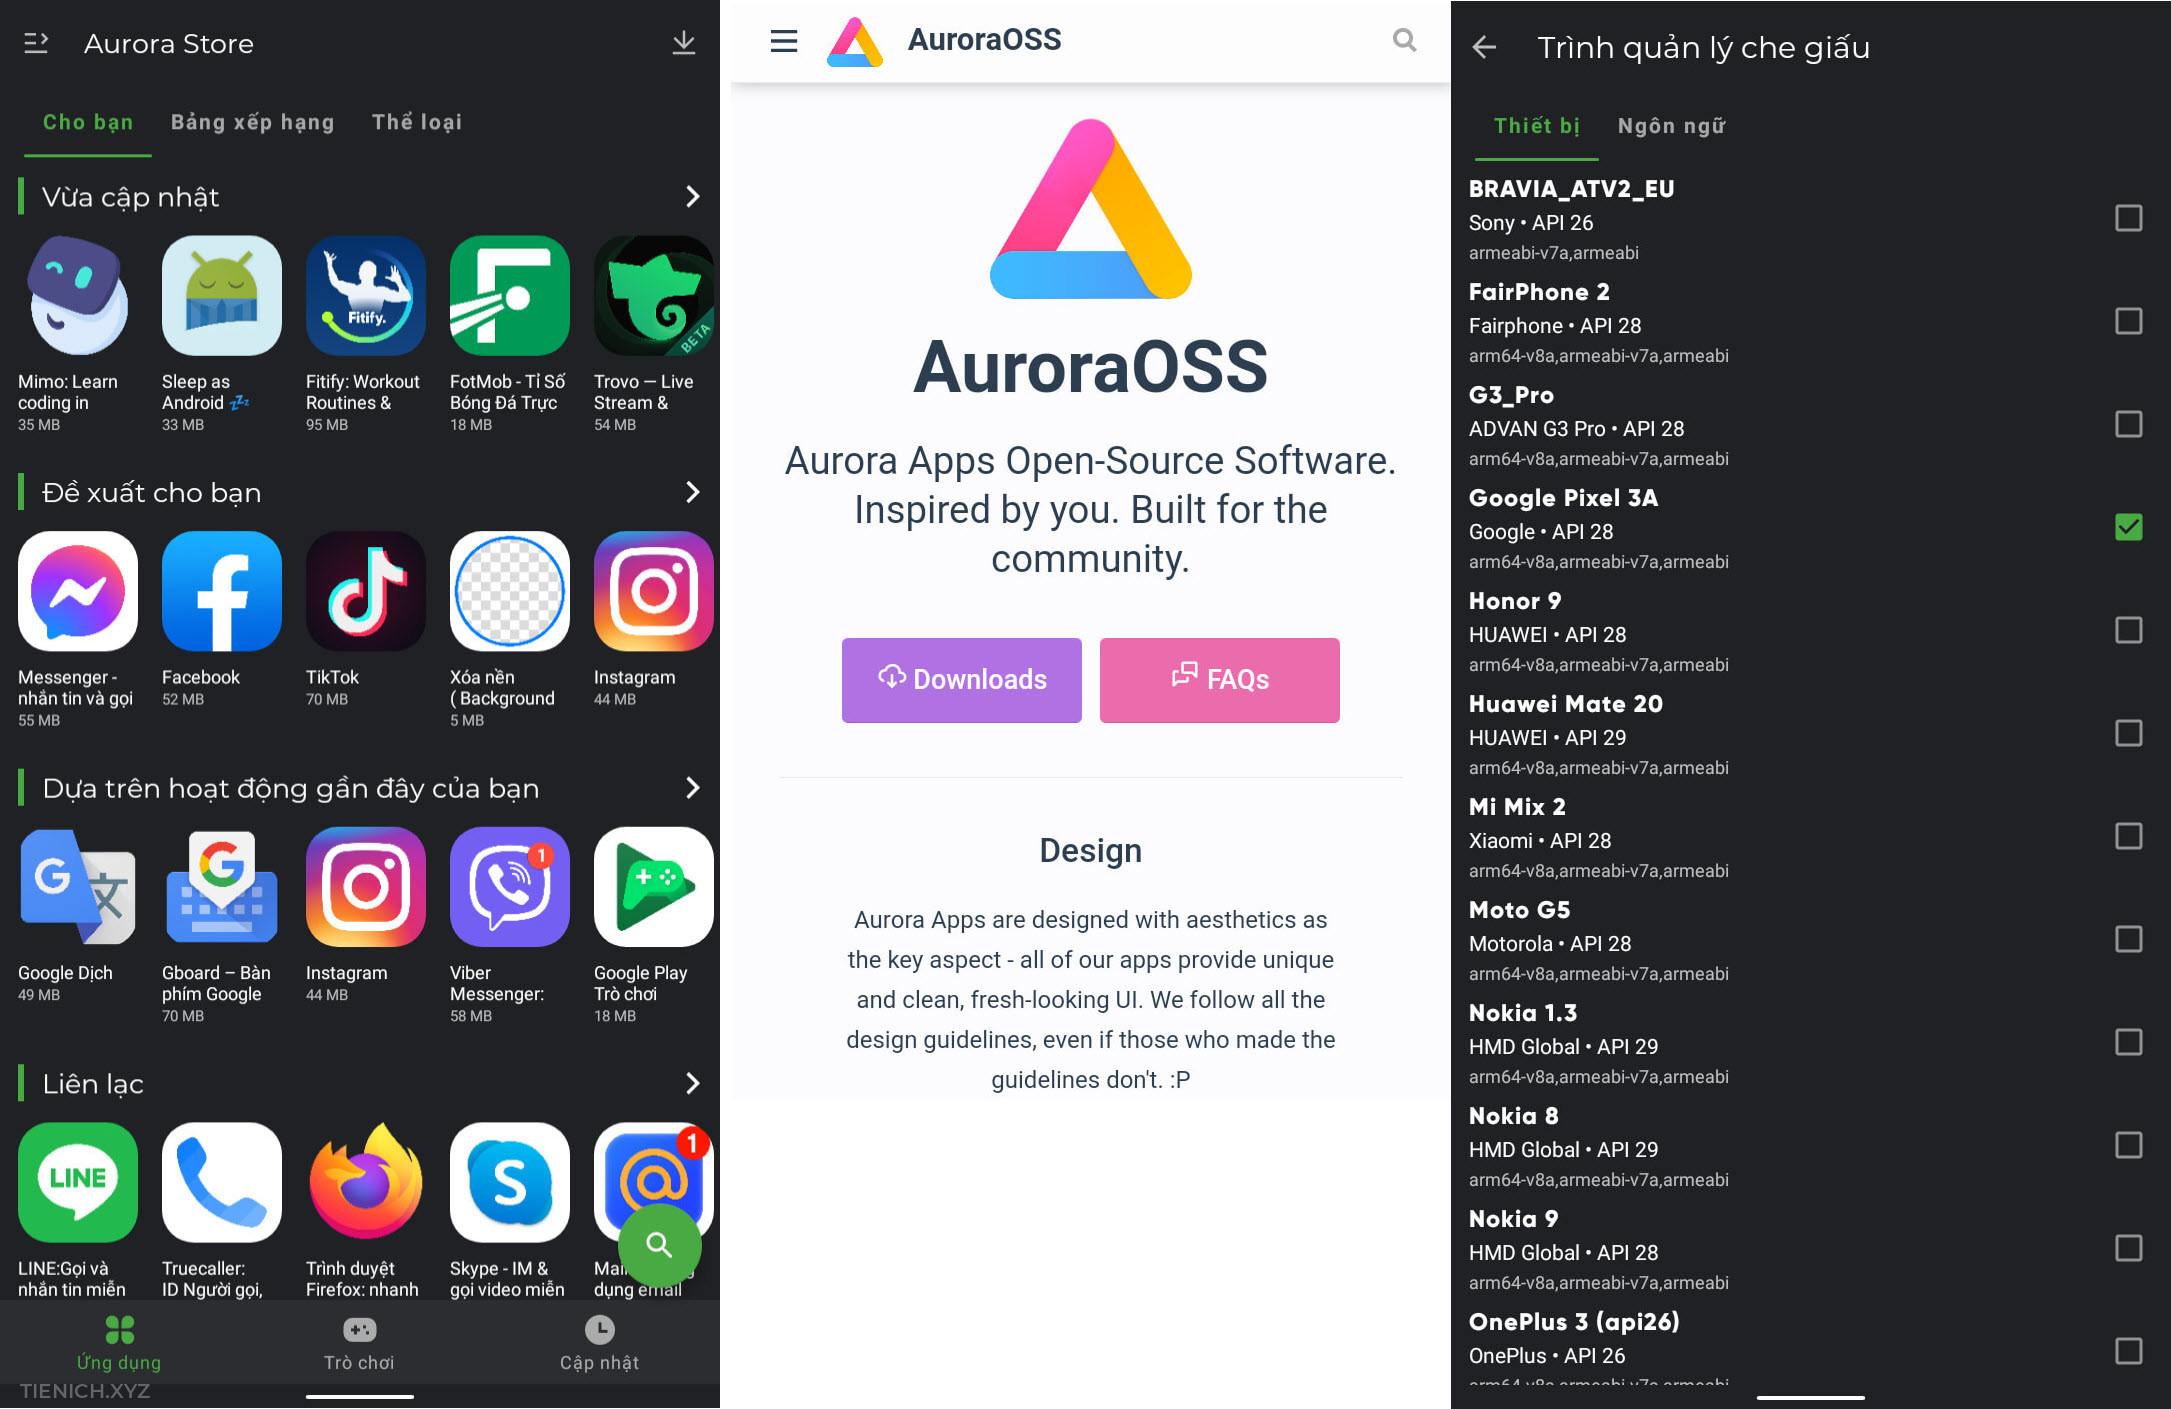 Giao diện chính và tính năng Aurora Store